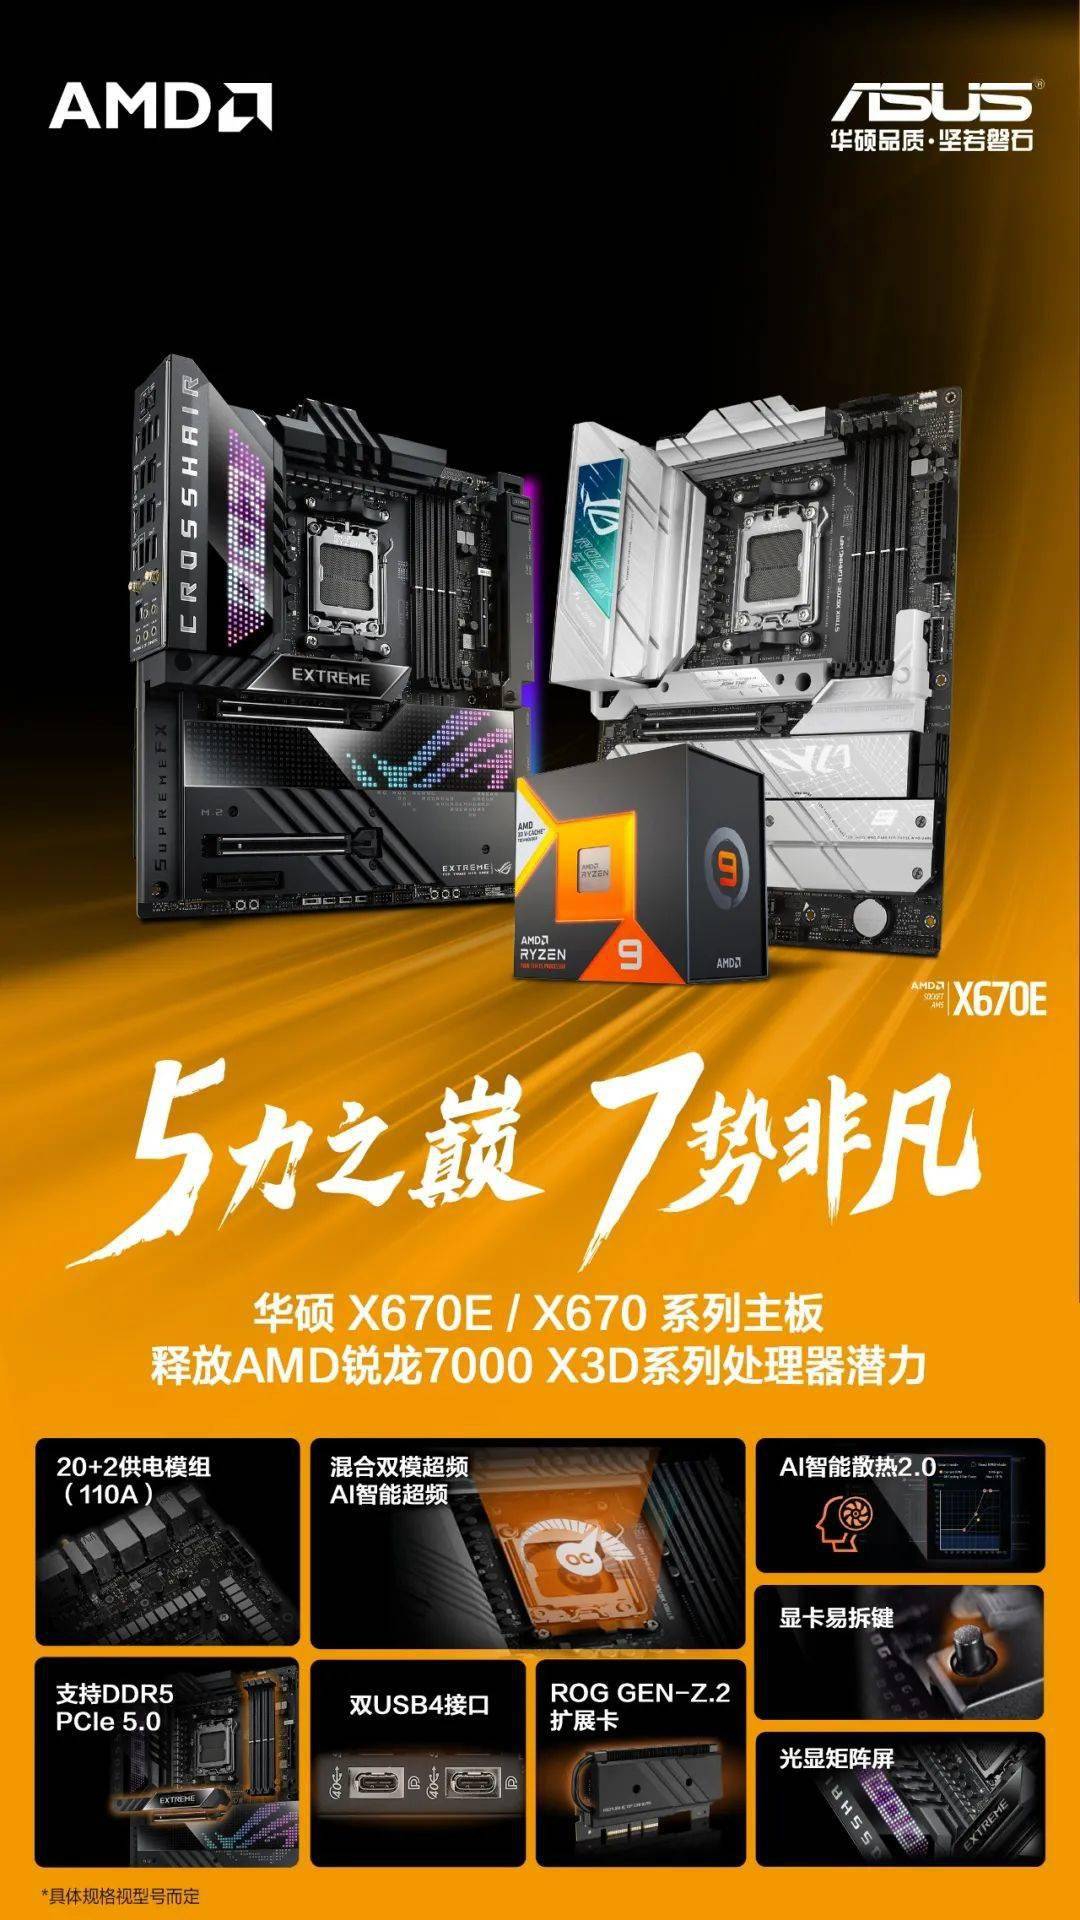 华硕 X670E 和 X670 系列主板新 BIOS 已上线   